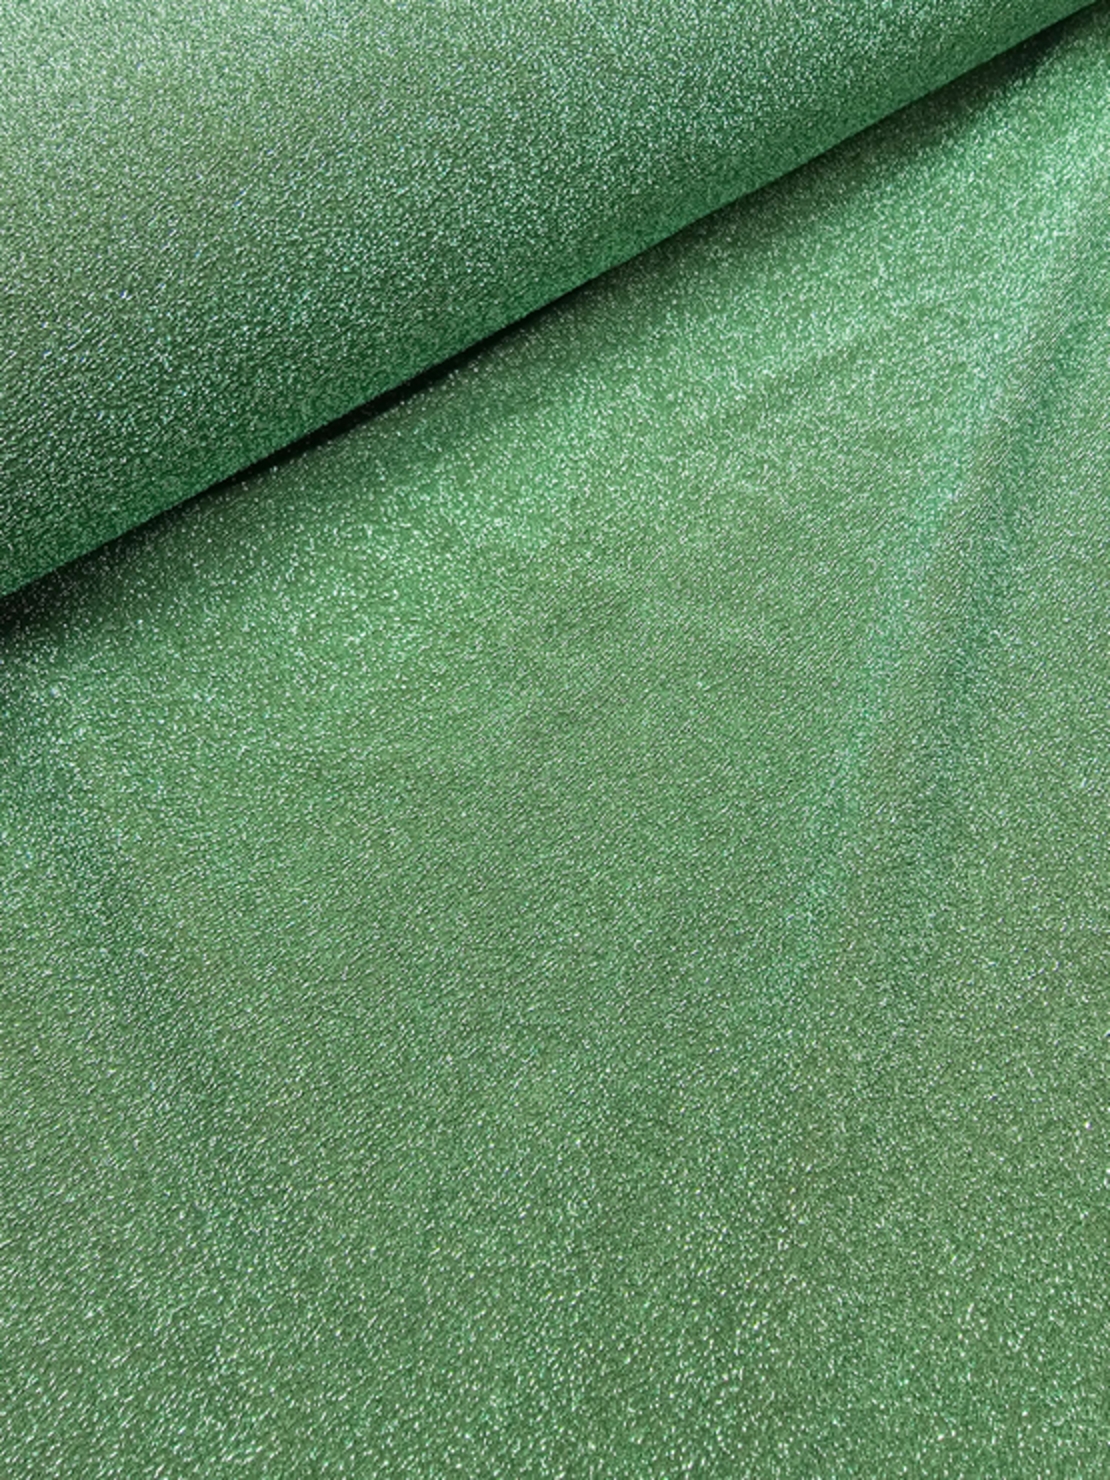 לייקרה לורקס צבע ירוק מעושן